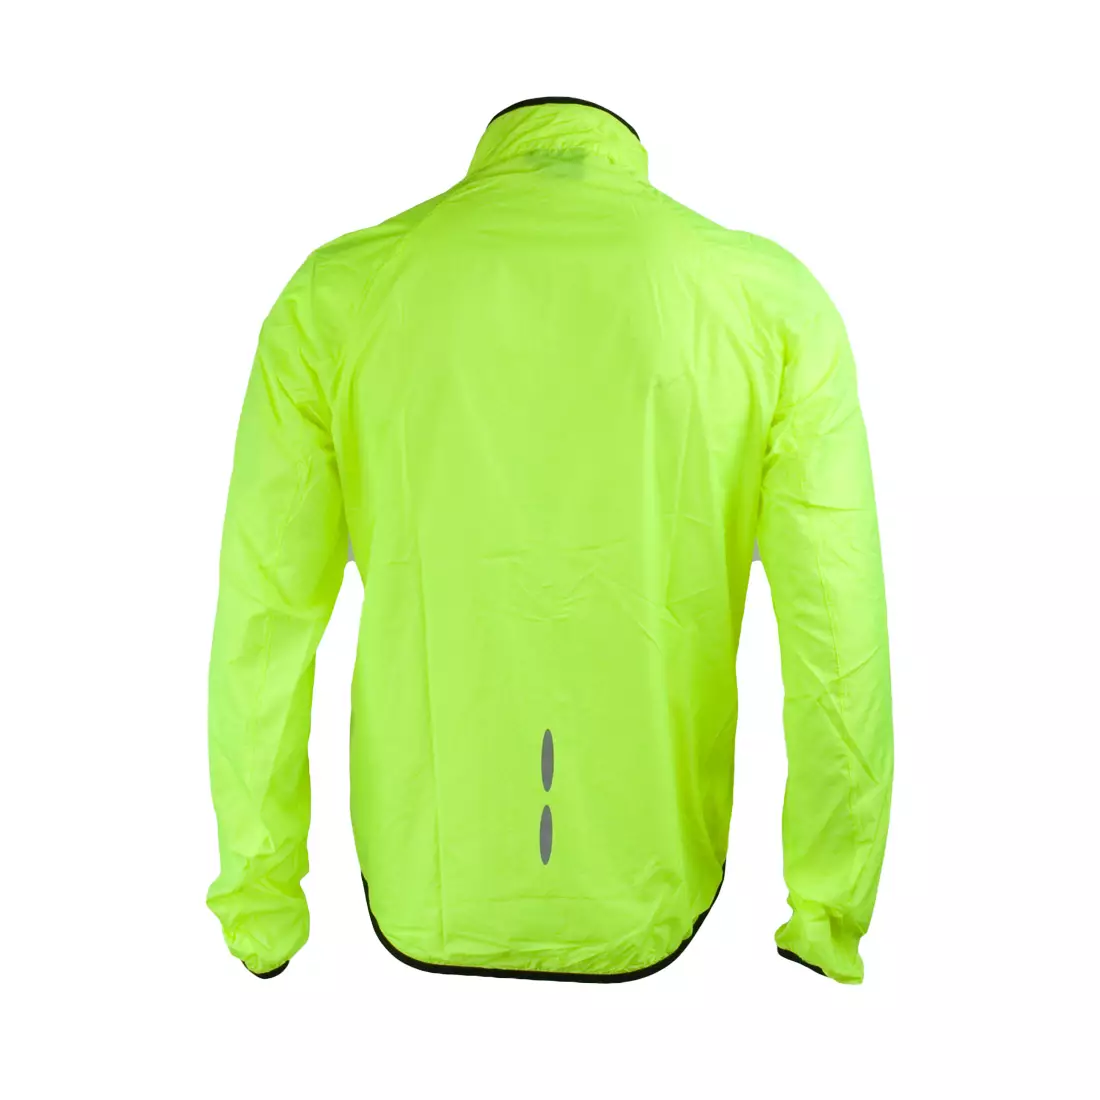 JACKET NEWLINE WINDPACK - jacket sport ultra-ușor 14176-090, culoare: Fluor